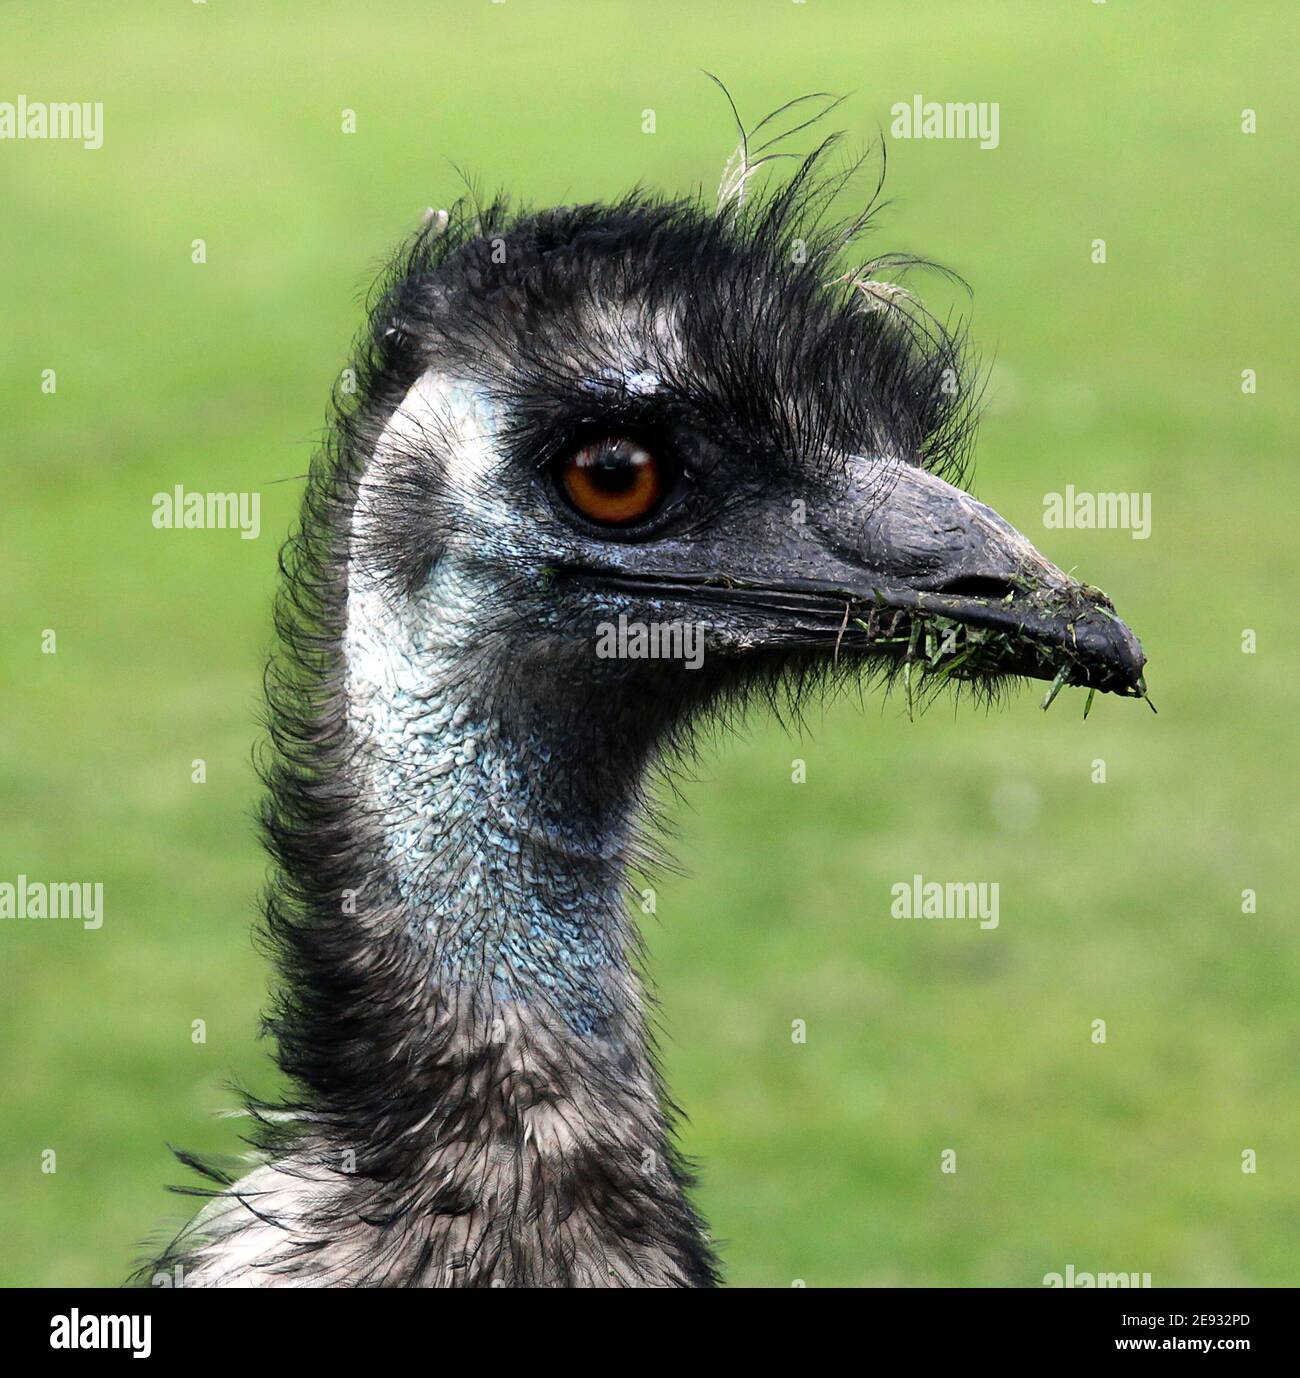 EMU (Dromaius novaehollandiae) deuxième oiseau vivant le plus grand après son autruche.endémique à l'Australie.doux-plumes, brun, sans flightless,avec longs cols et jambes,atteignent jusqu'à 1.9 mètres de hauteur Banque D'Images